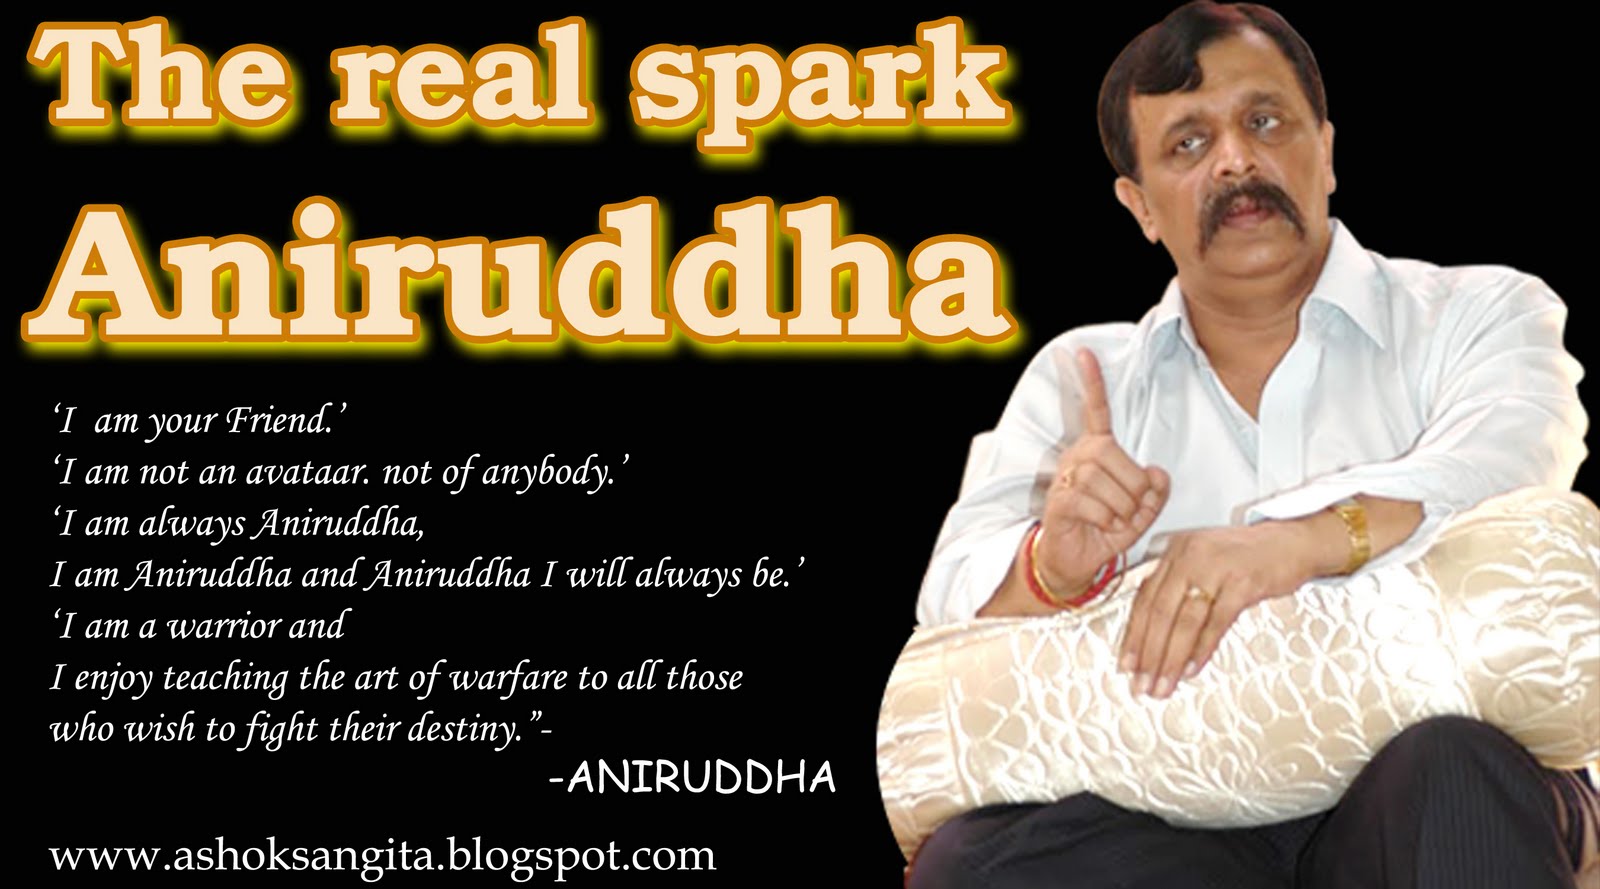 The Real Spark-Aniruddha | AshokSangita's Blog